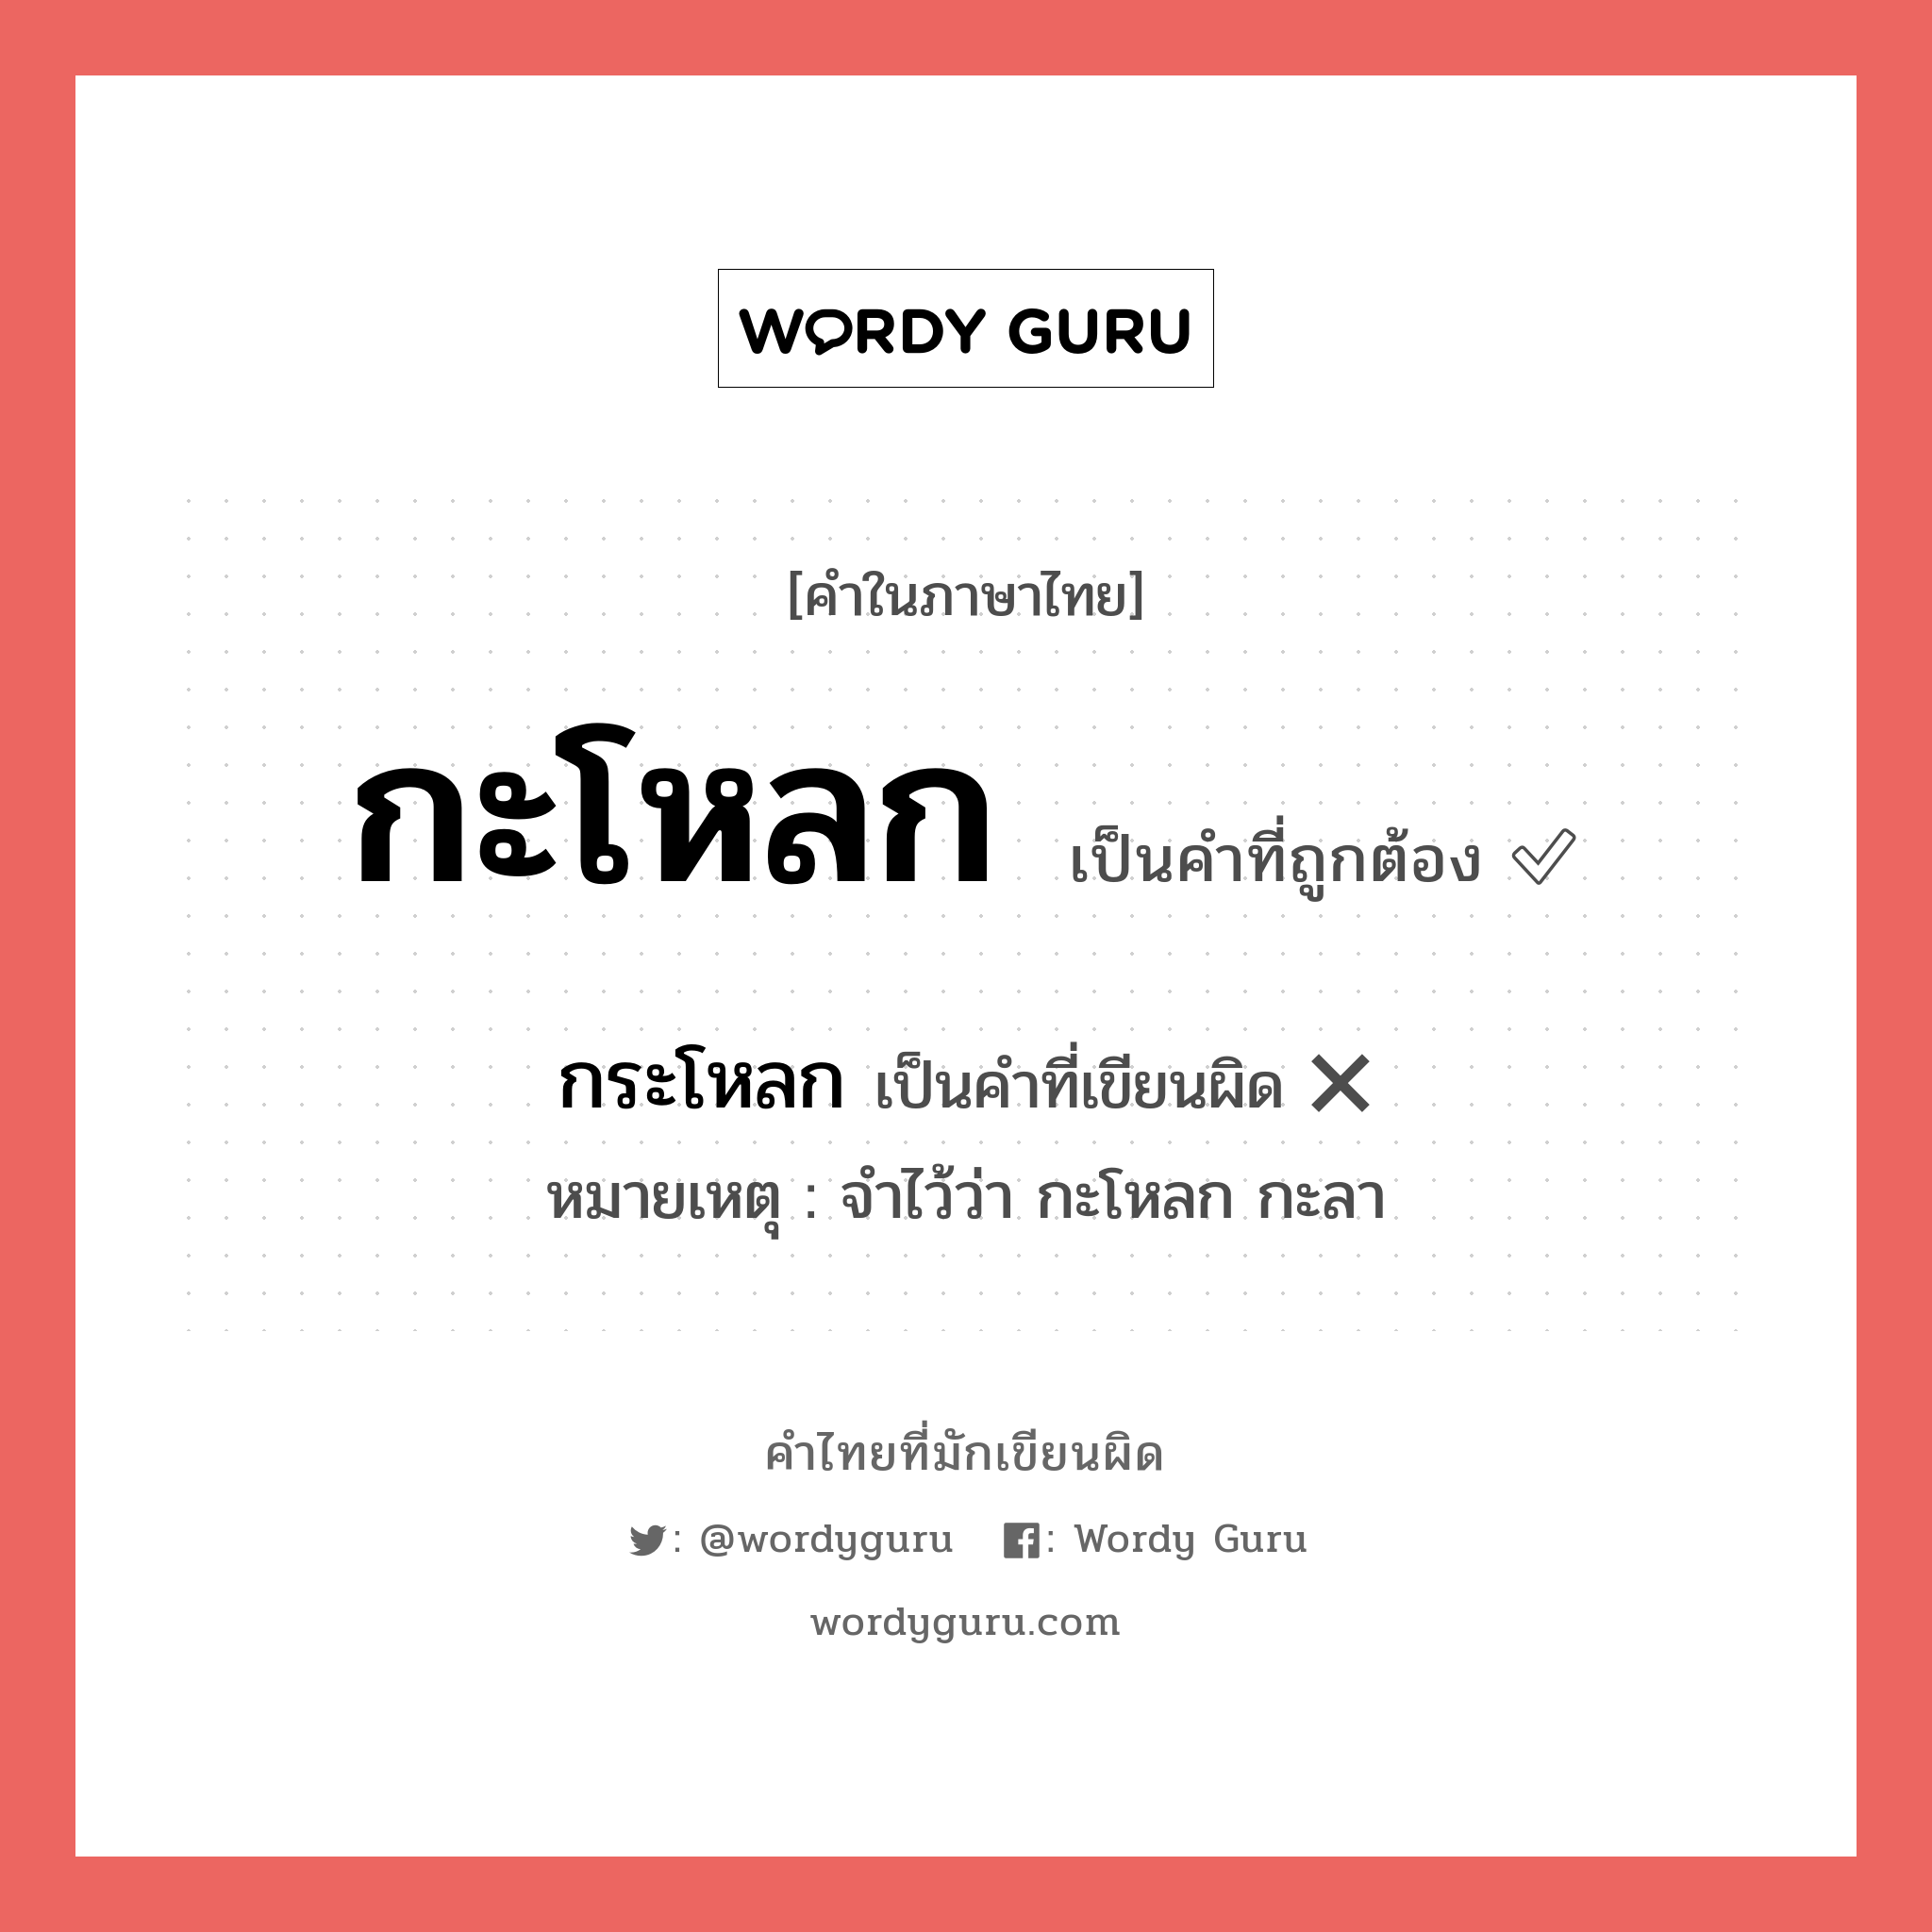 กะโหลก หรือ กระโหลก คำไหนเขียนถูก?, คำในภาษาไทยที่มักเขียนผิด กะโหลก คำที่ผิด ❌ กระโหลก หมายเหตุ จำไว้ว่า กะโหลก กะลา